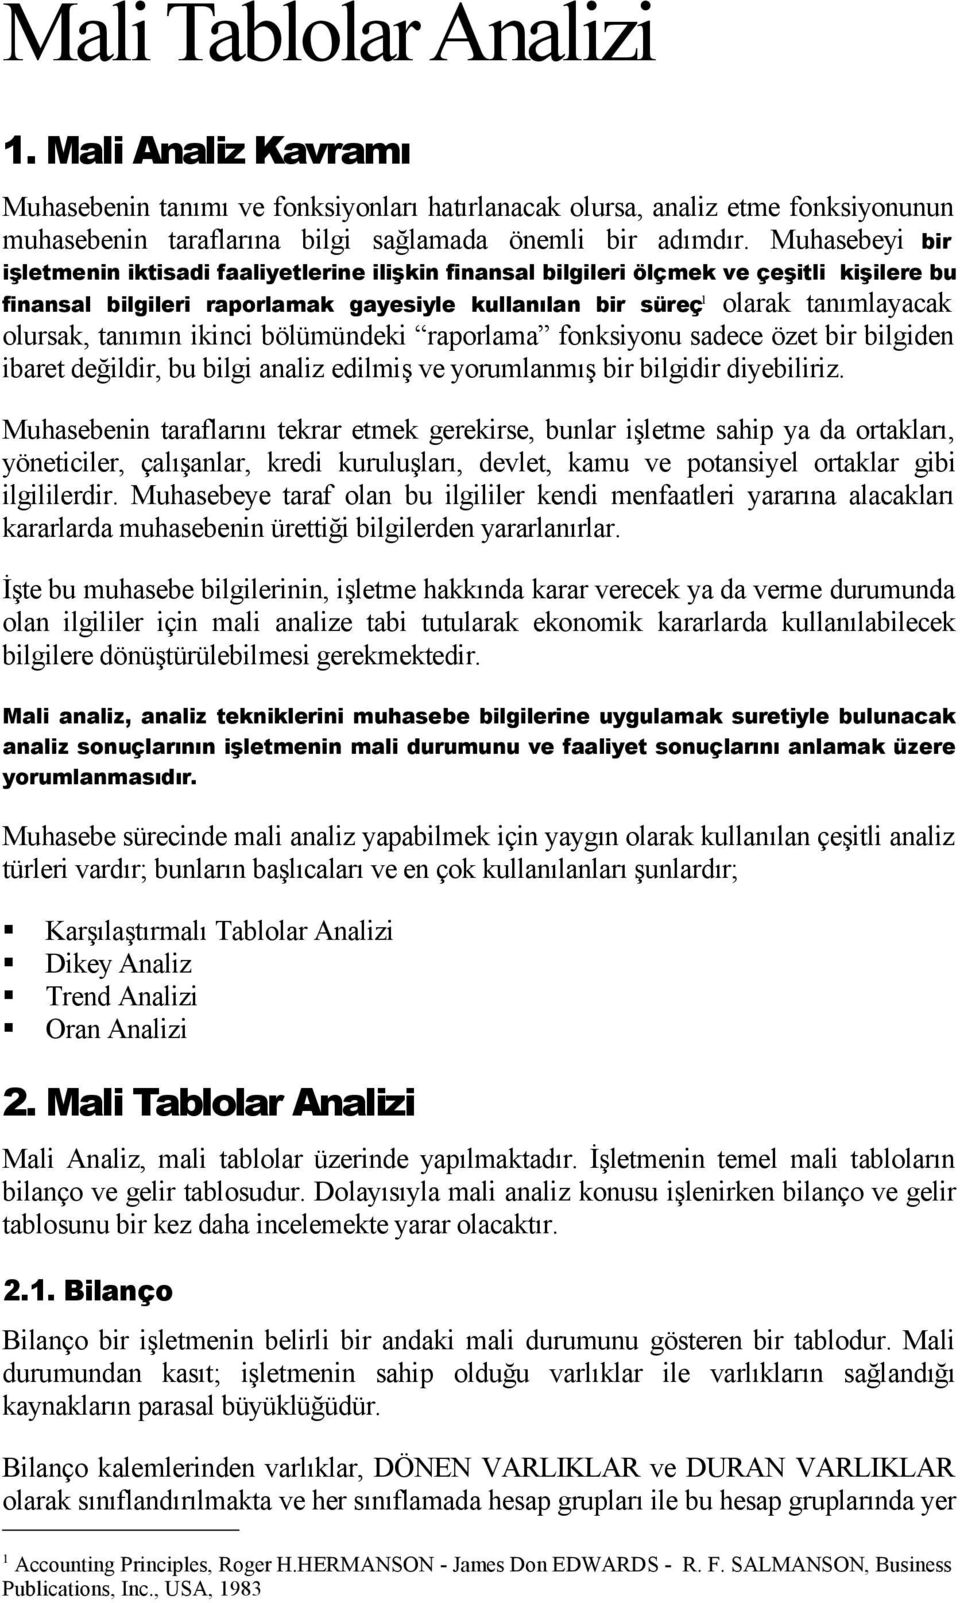 Mali Tablolar Analizi - PDF Ücretsiz indirin